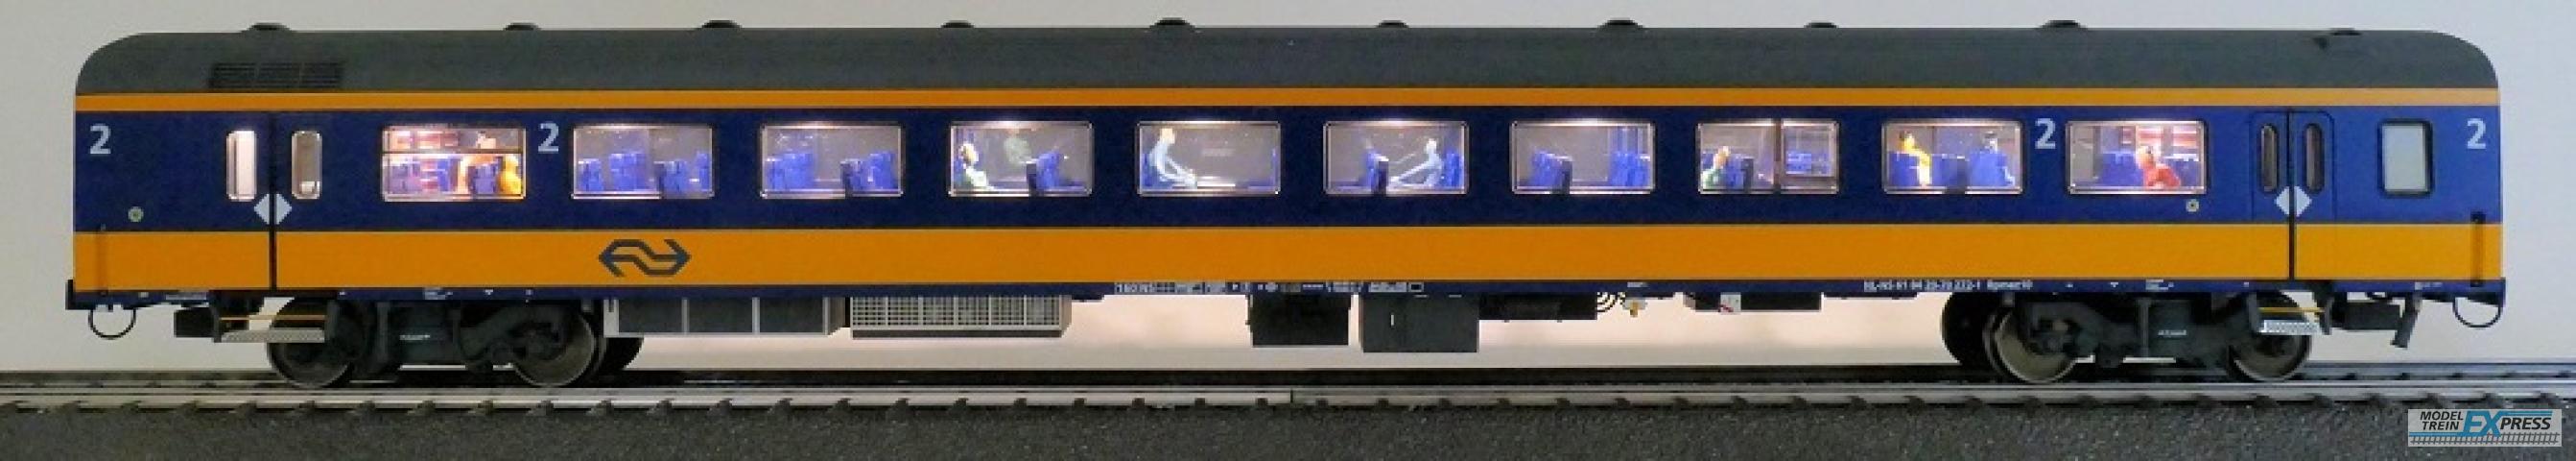 Exact-train 11150 NS ICRm Amsterdam - Breda für den Inlandseinsatz Endwagen Bpmez10 (Farbe Gelb / Blau) mit Beleuchtung und Figuren, Ep. VI